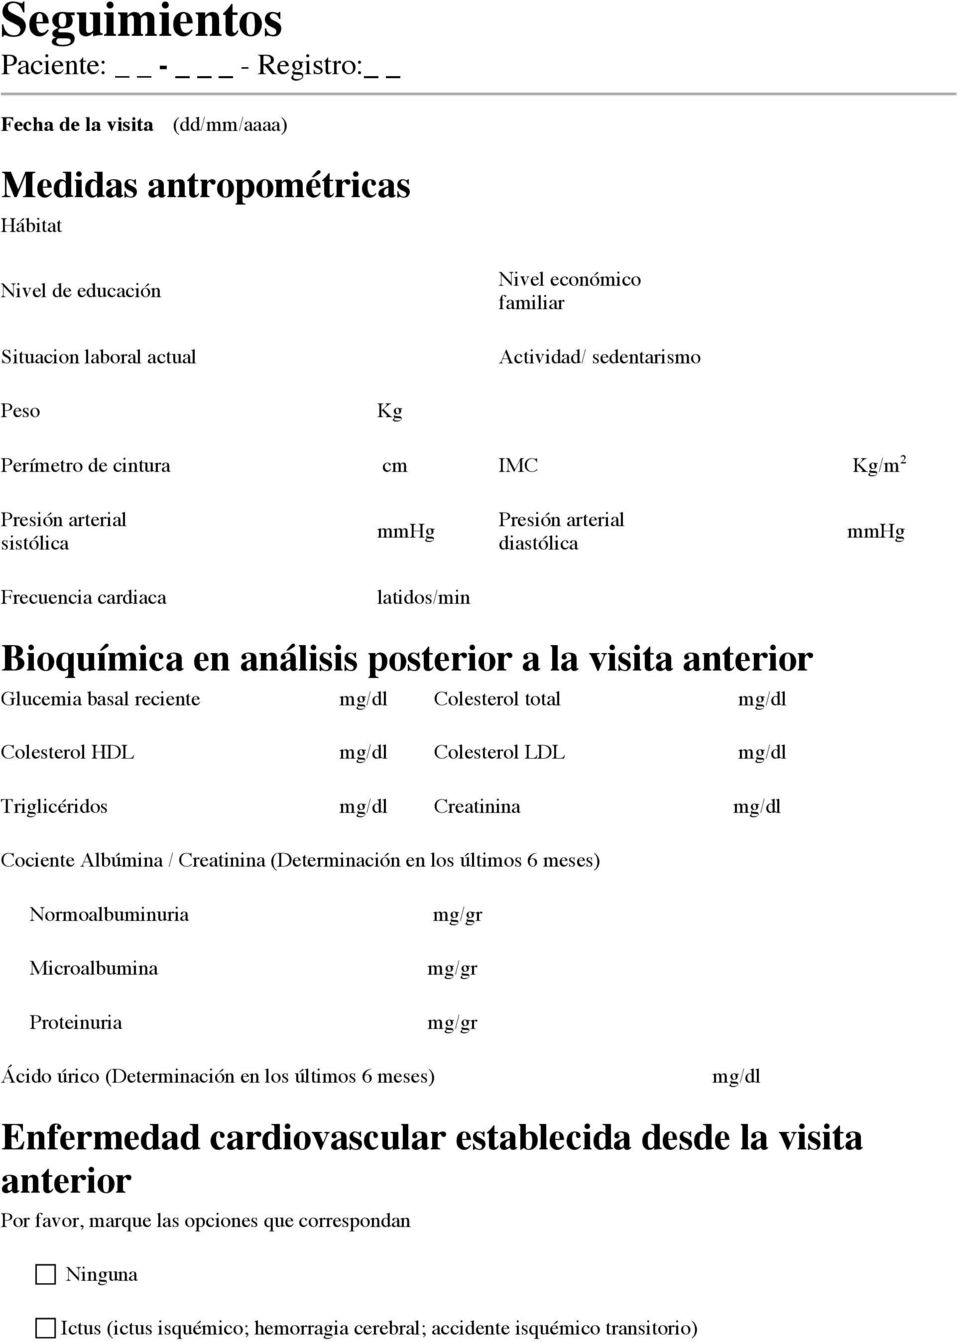 en análisis posterior a la visita anterior Glucemia basal reciente mg/dl Colesterol total mg/dl Colesterol HDL mg/dl Colesterol LDL mg/dl Triglicéridos mg/dl Creatinina mg/dl Cociente Albúmina /